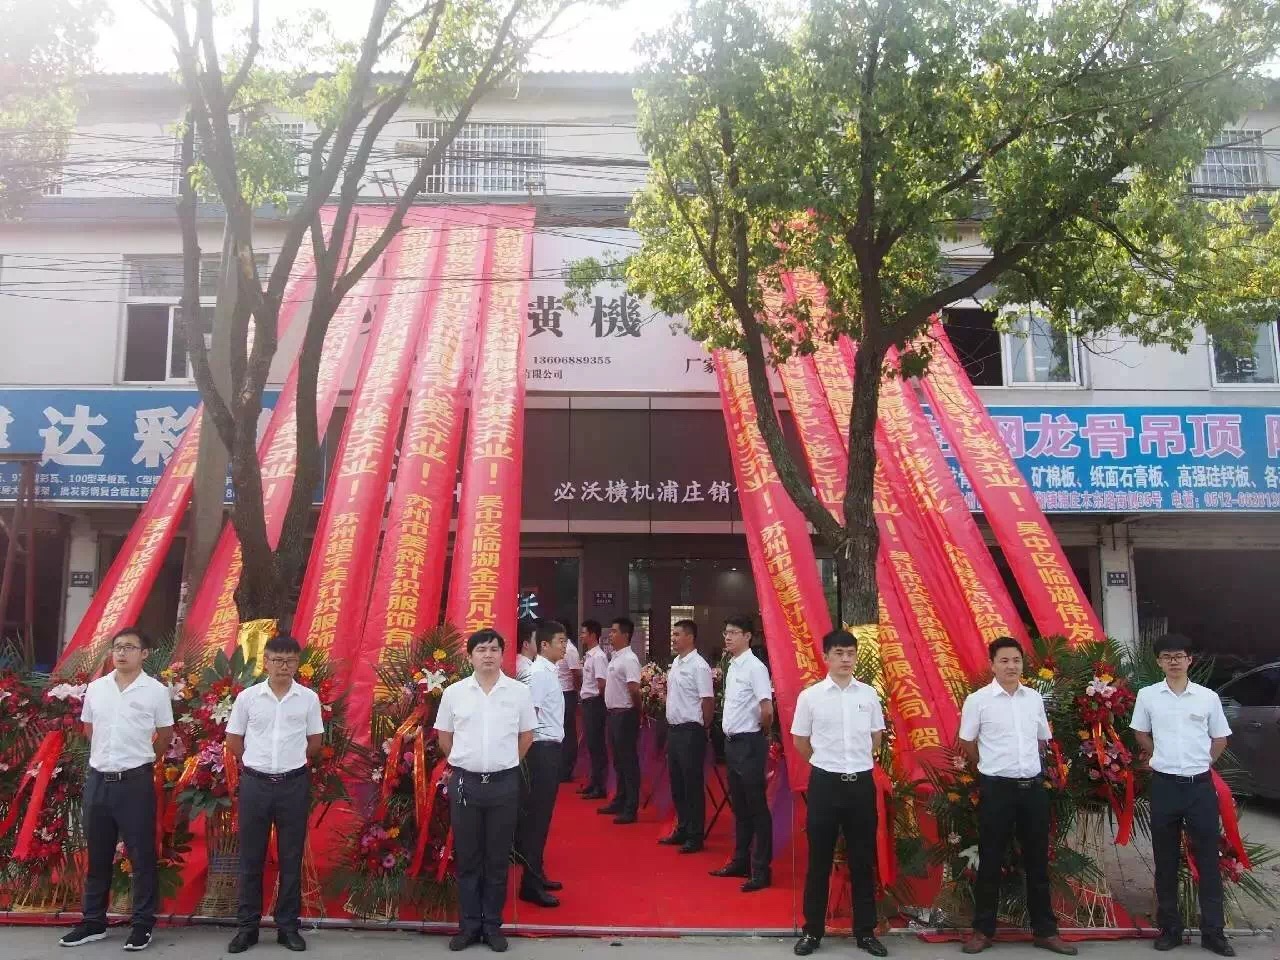 Opening celebration of Suzhou service center